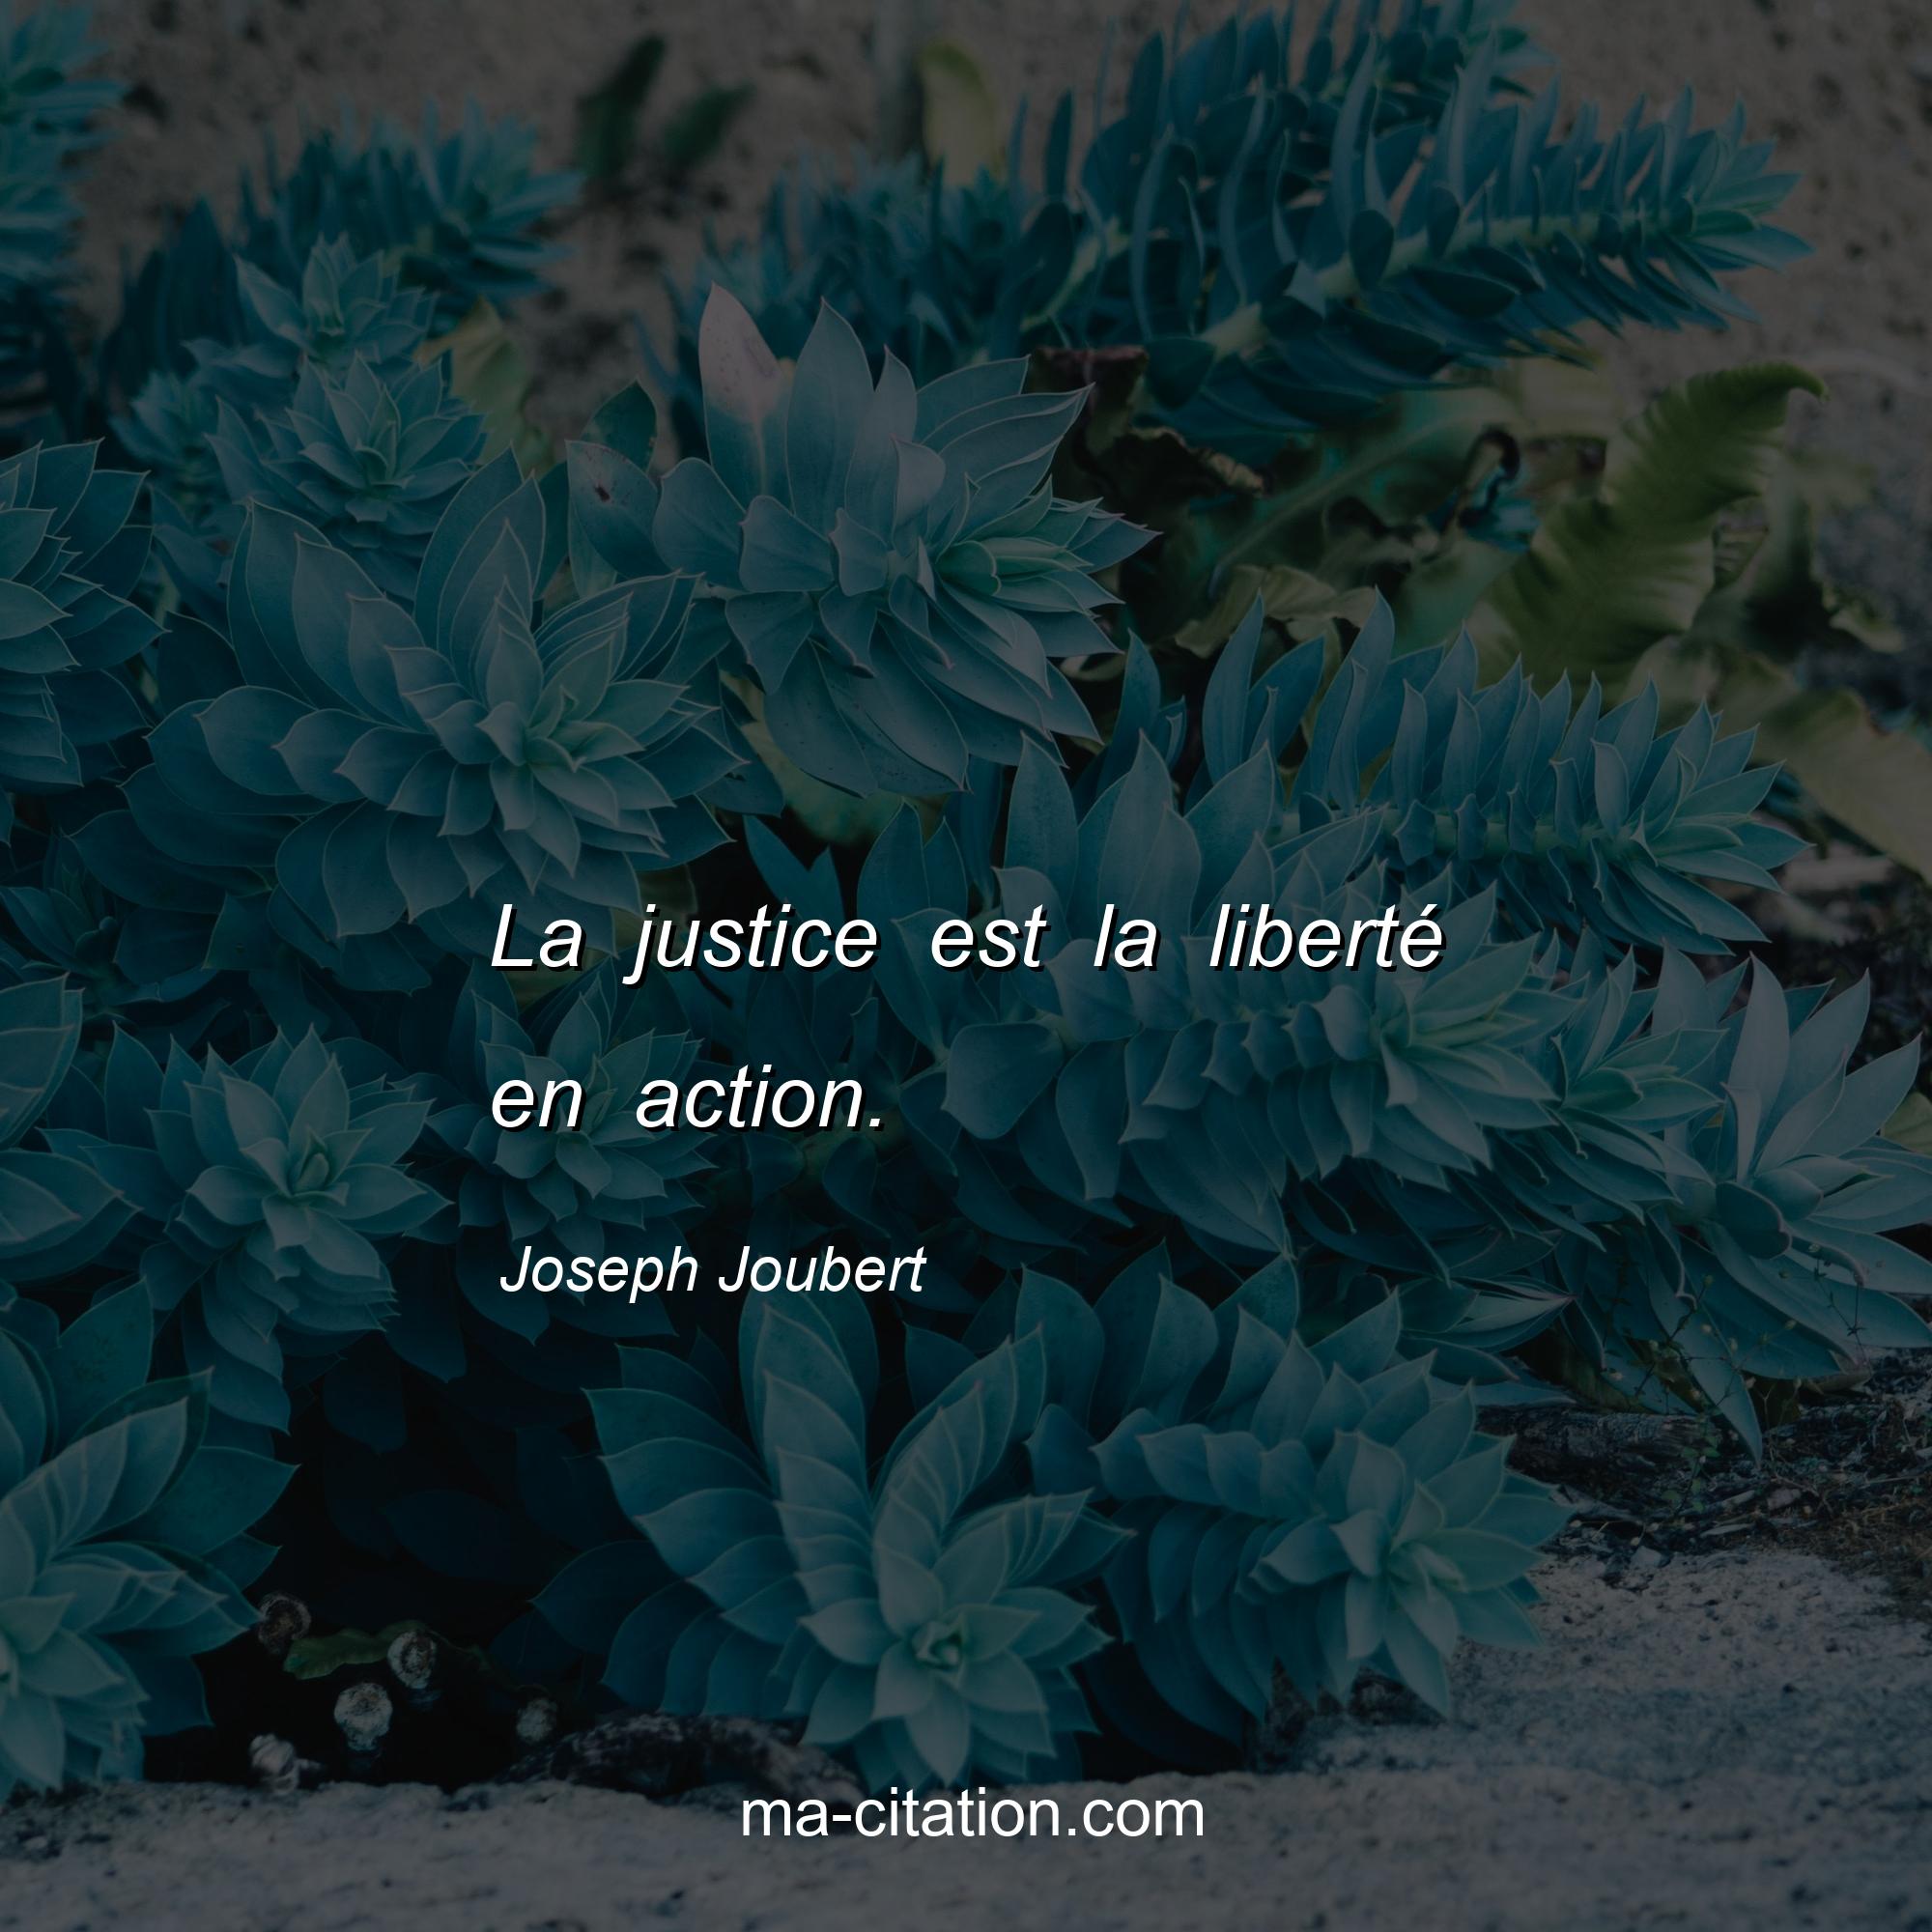 Joseph Joubert : La justice est la liberté en action.